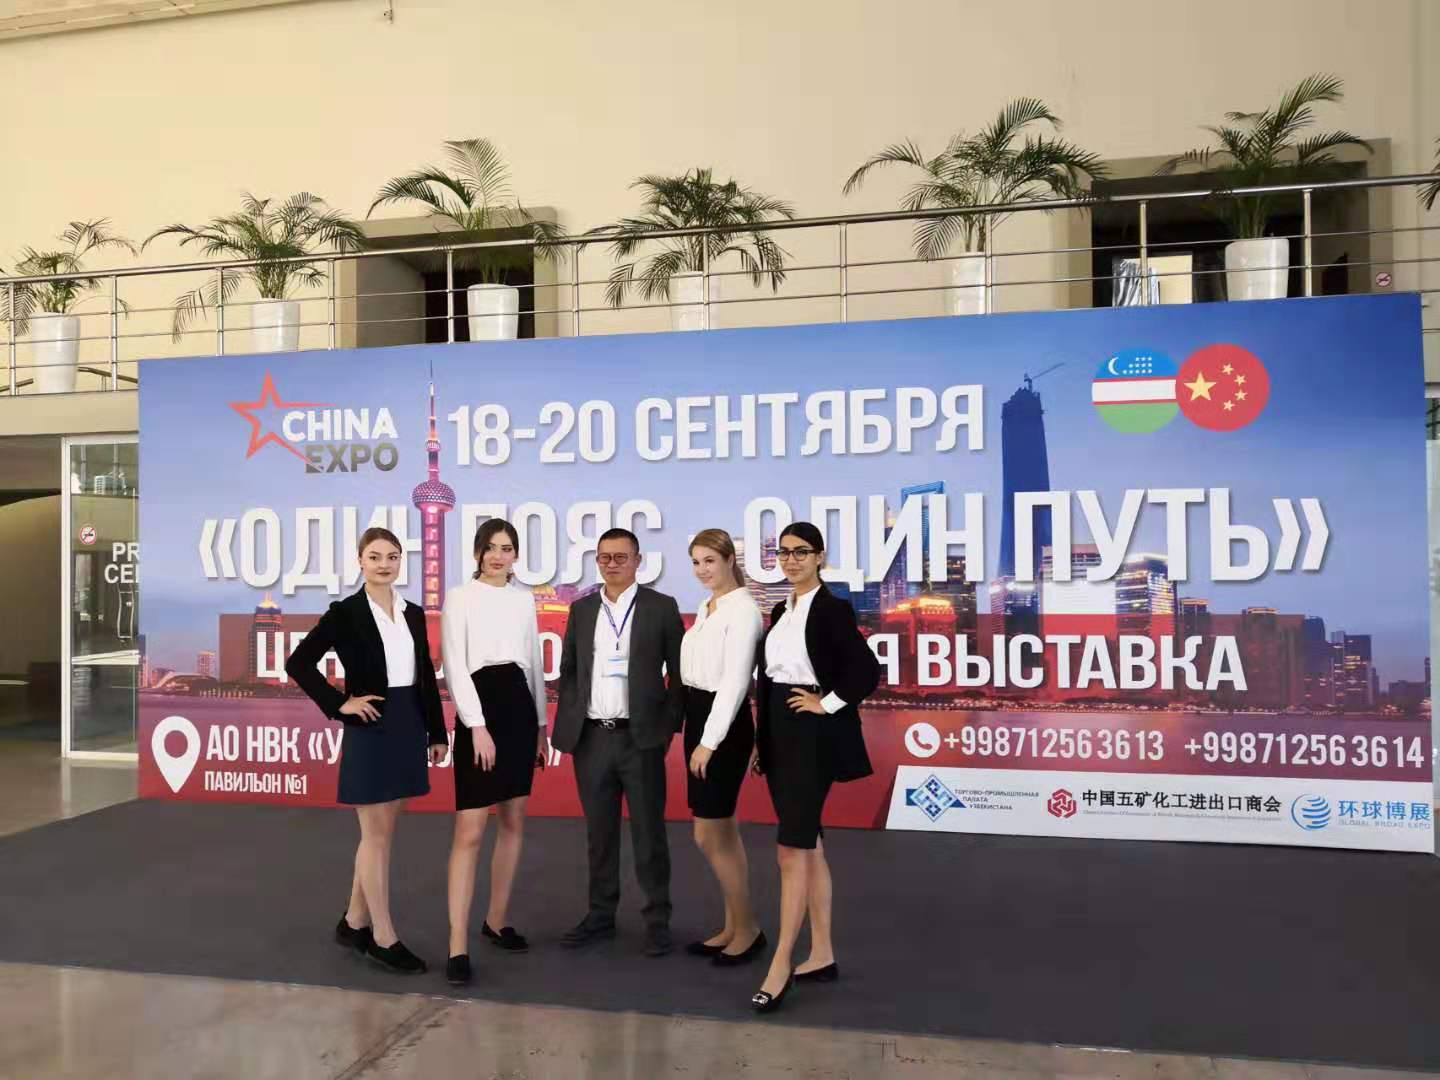 تمت دعوة شركة Smart سلسلة التبريد الأولى لحضور اجتماع الحزام والطريق في أوزبكستان